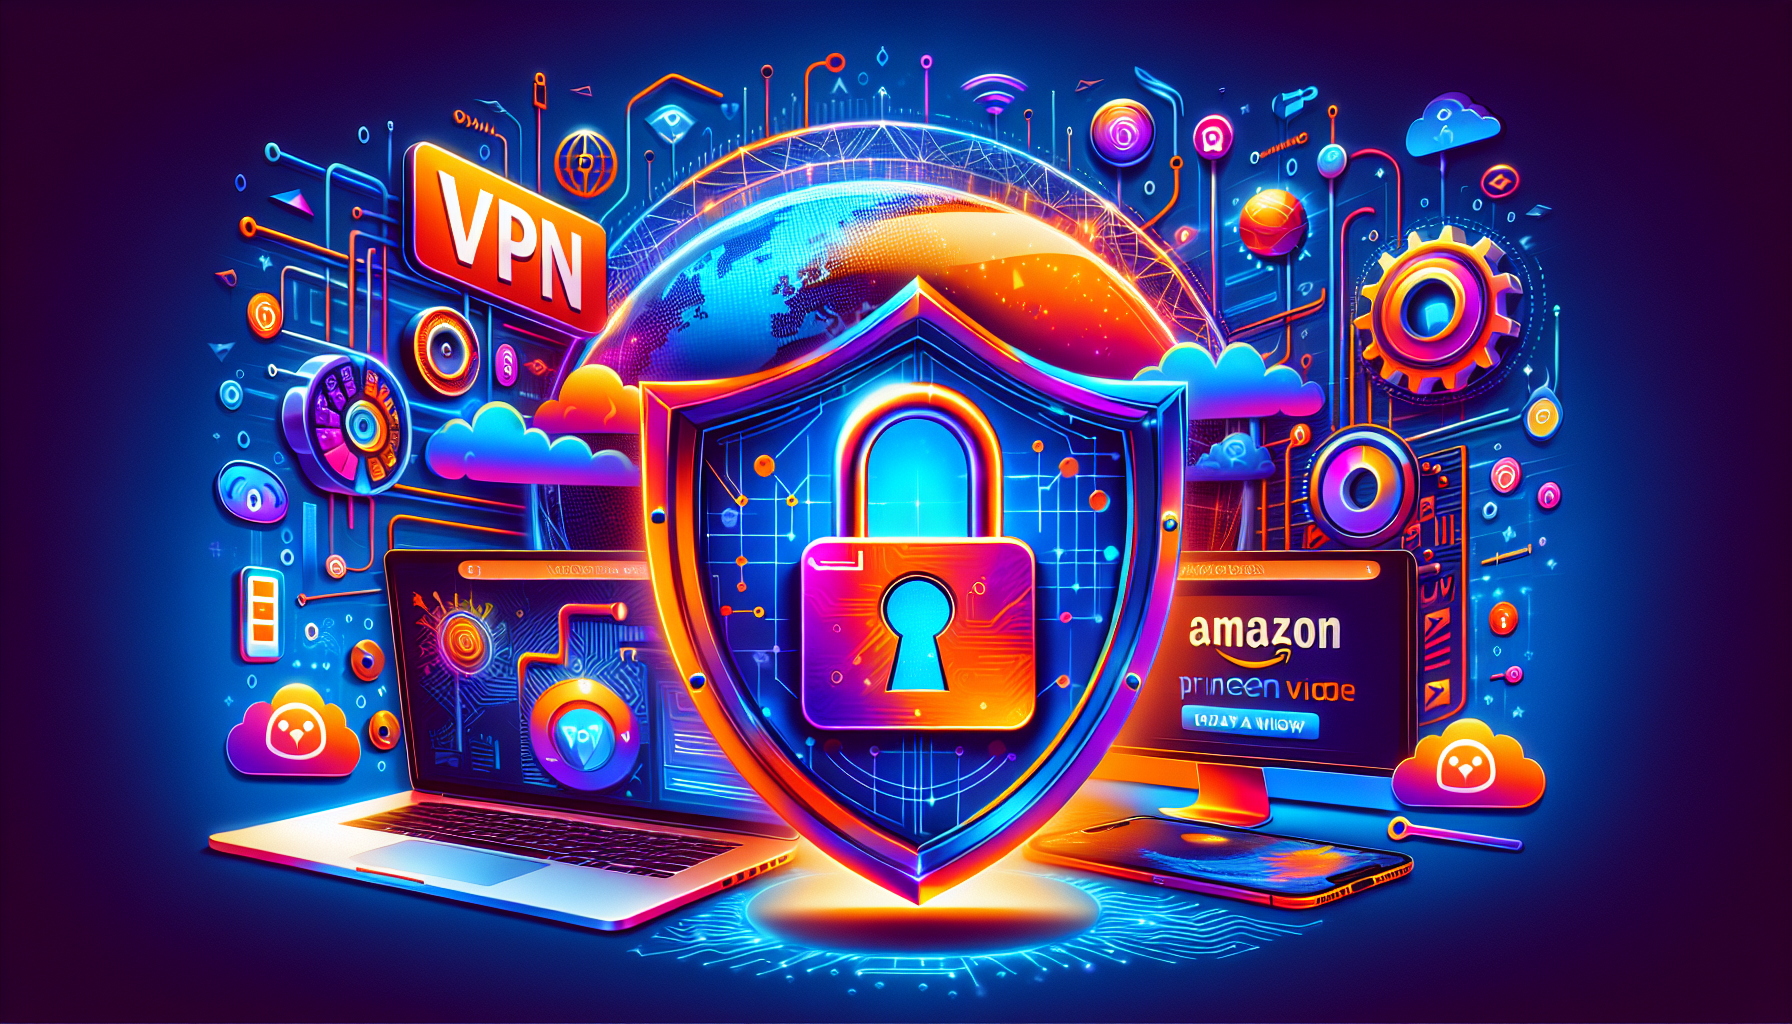 Desbloqueando o Amazon Prime Video com as Melhores VPNs